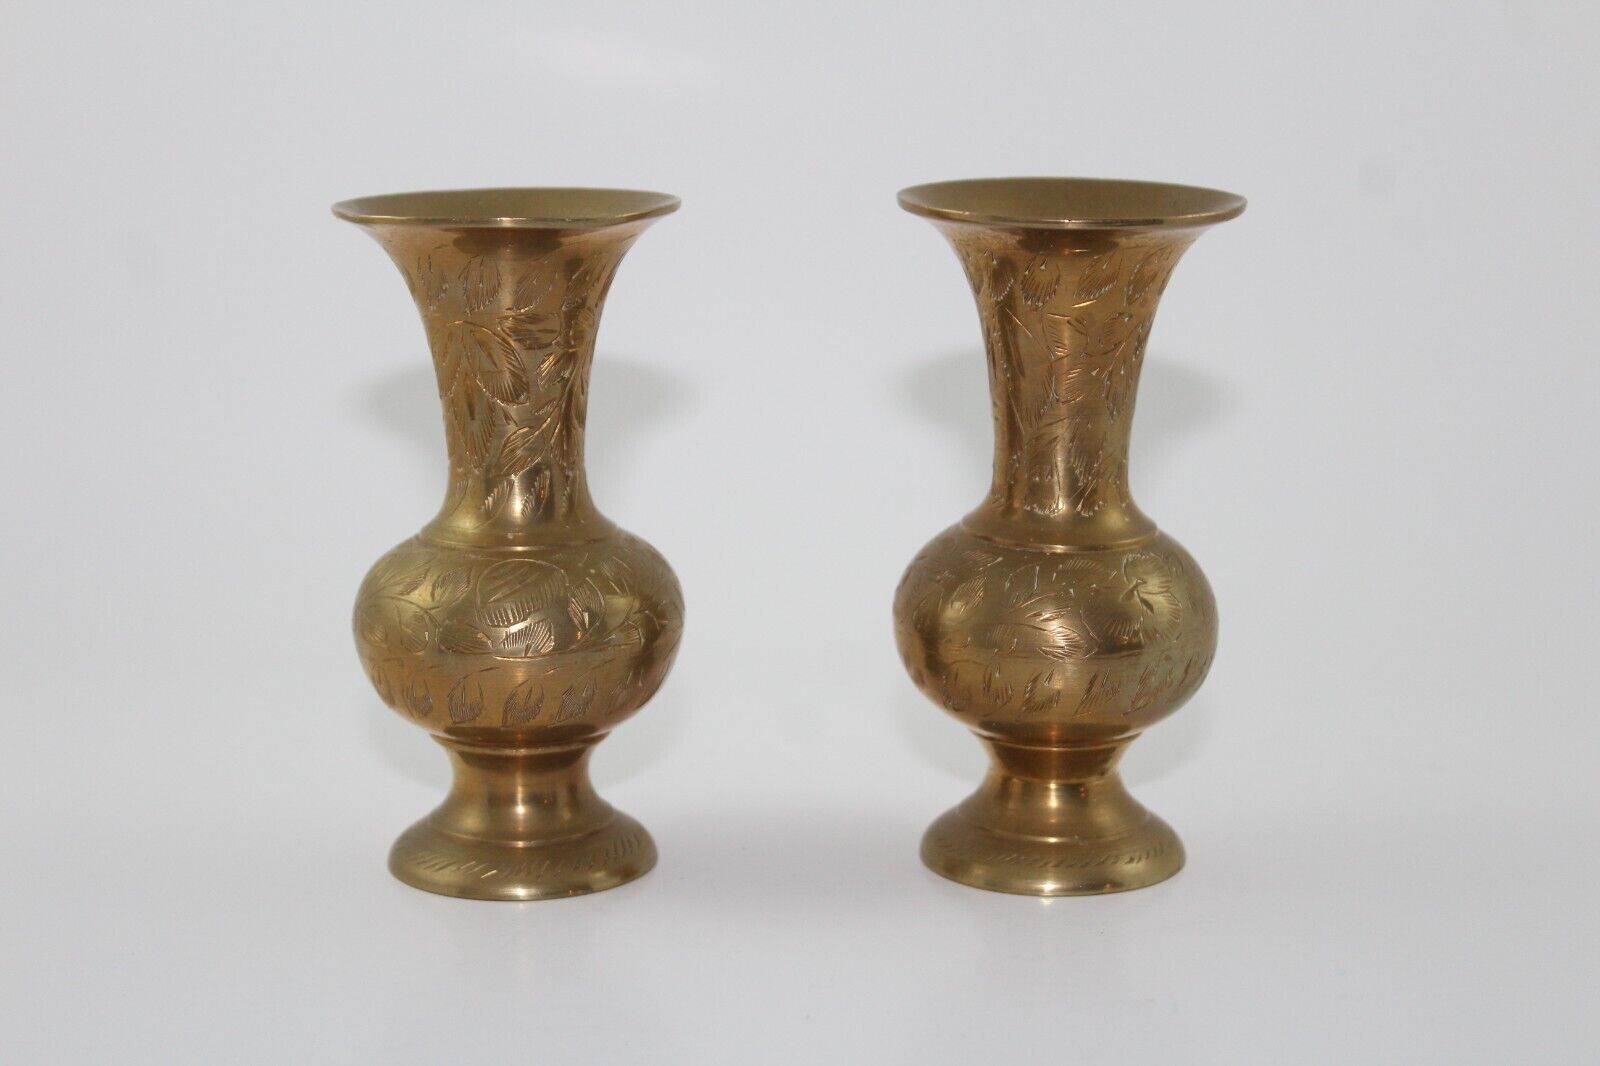 VTG Etched Indian Brassware, Vase, Decorative, Ornamental 4in Set of 2